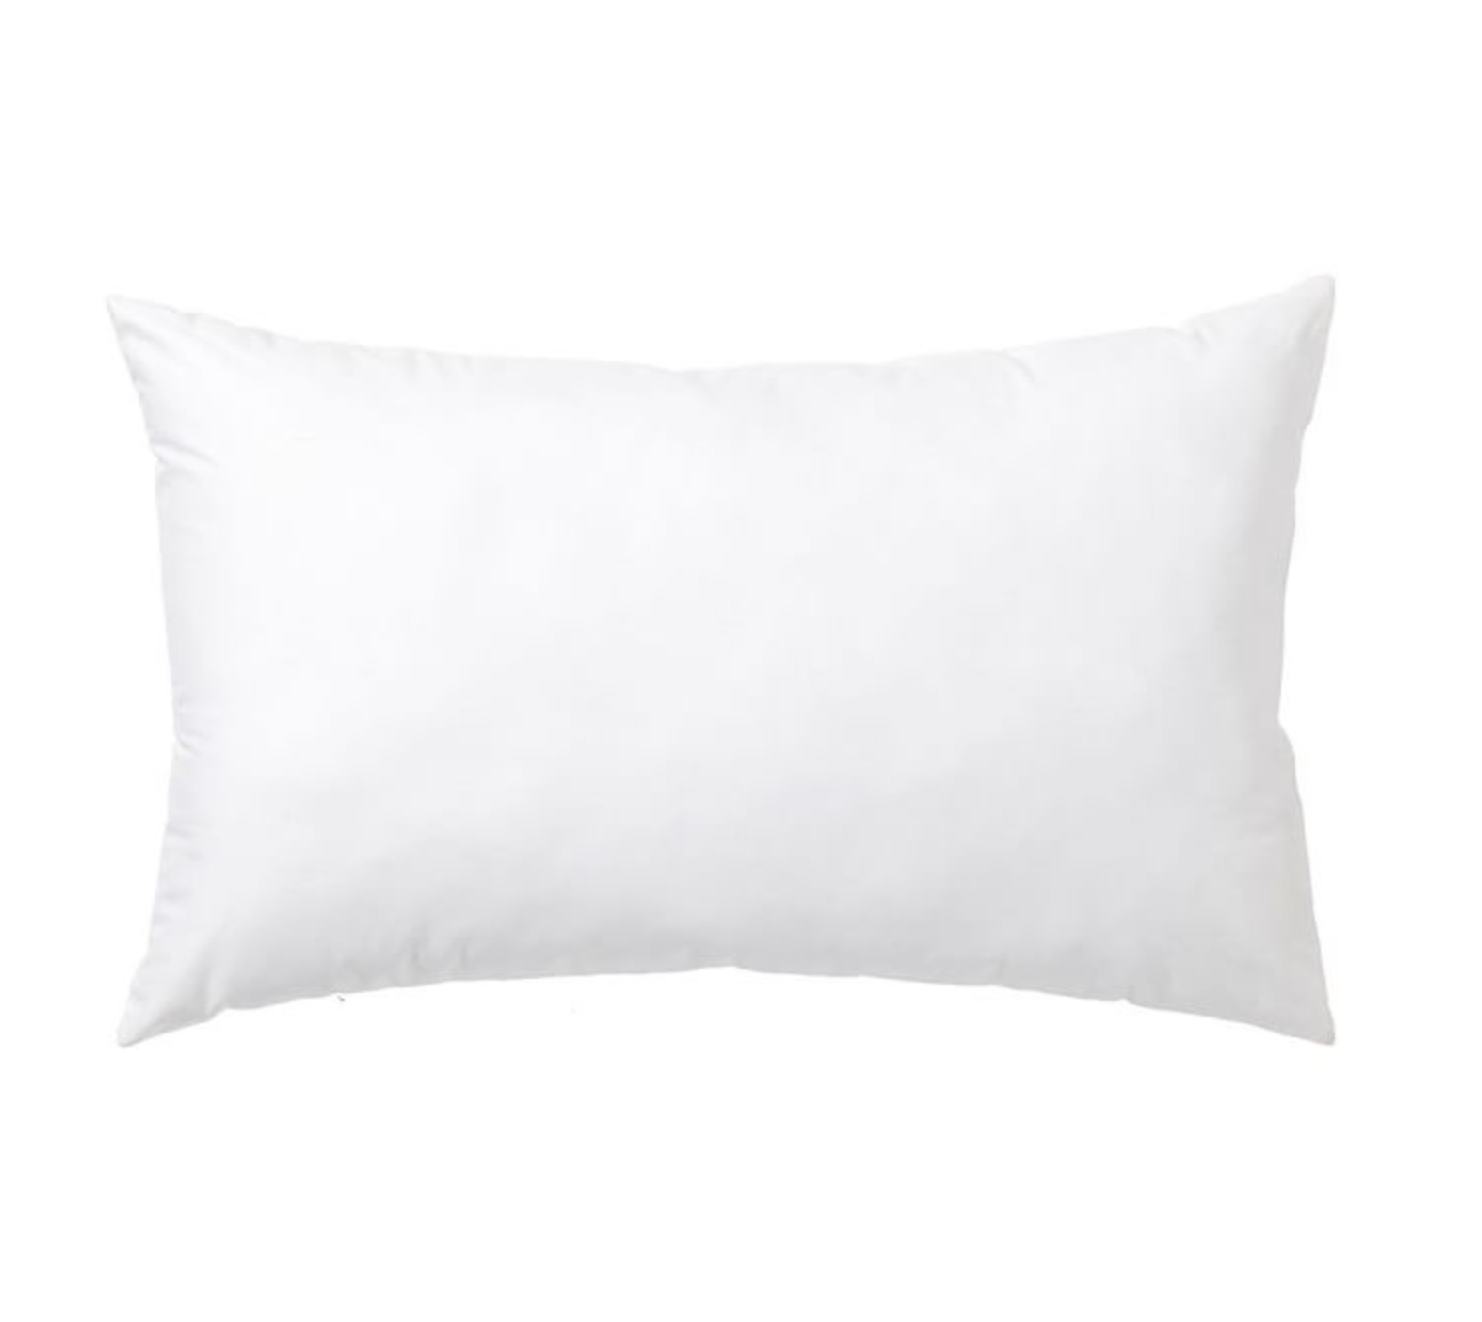 Synthetic down Pillow Insert - 14X36 down Alternative Pillow, Lumbar